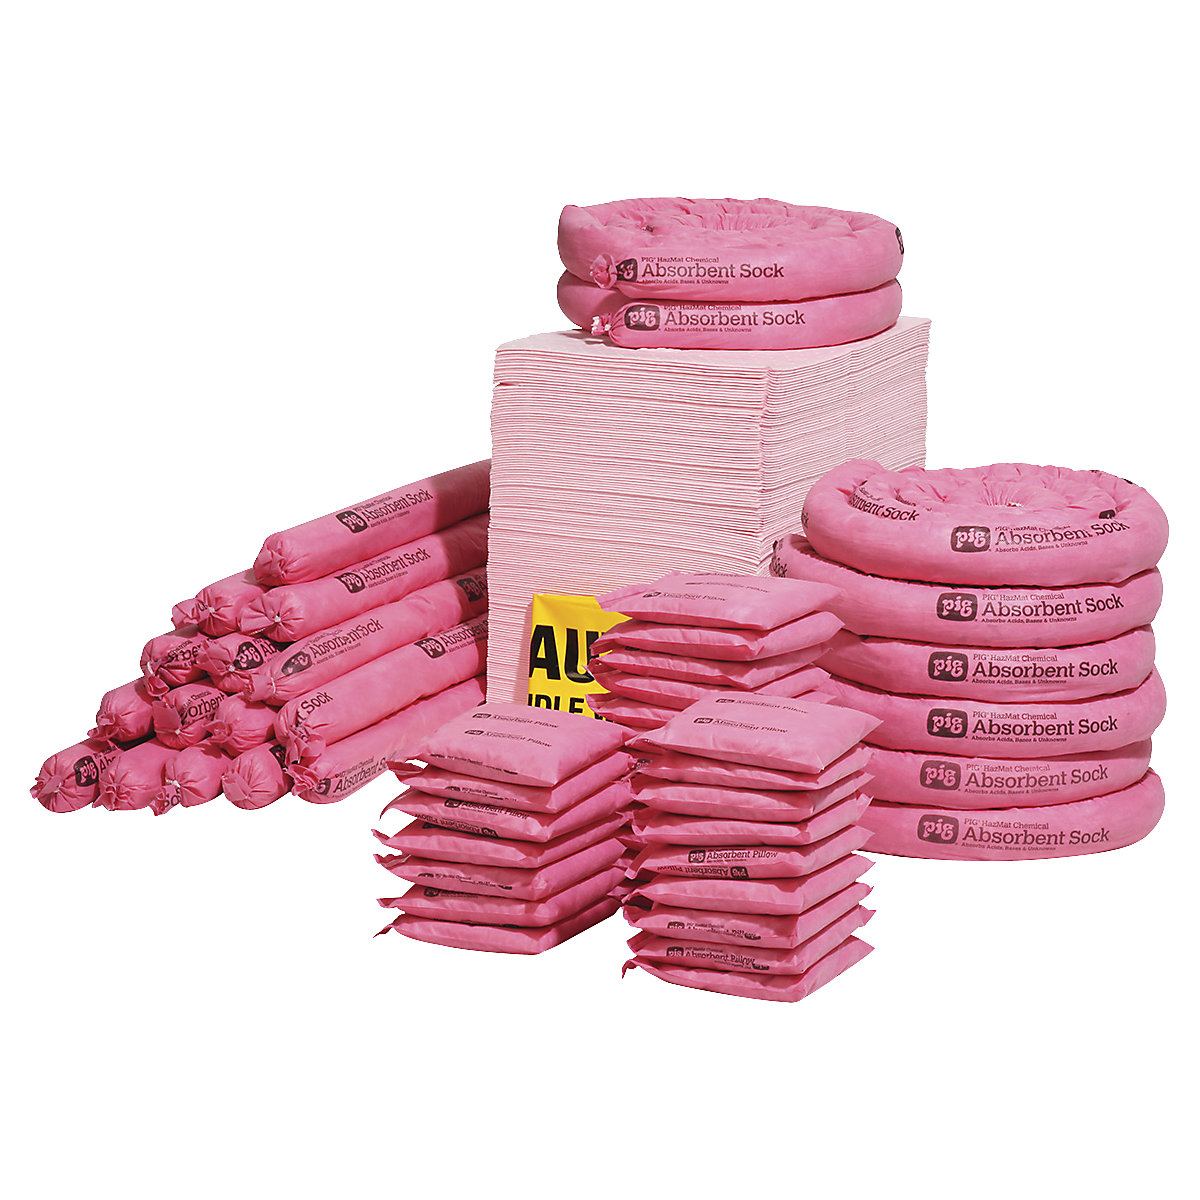 Pacote de reabastecimento pata kit de emergência, grande – PIG